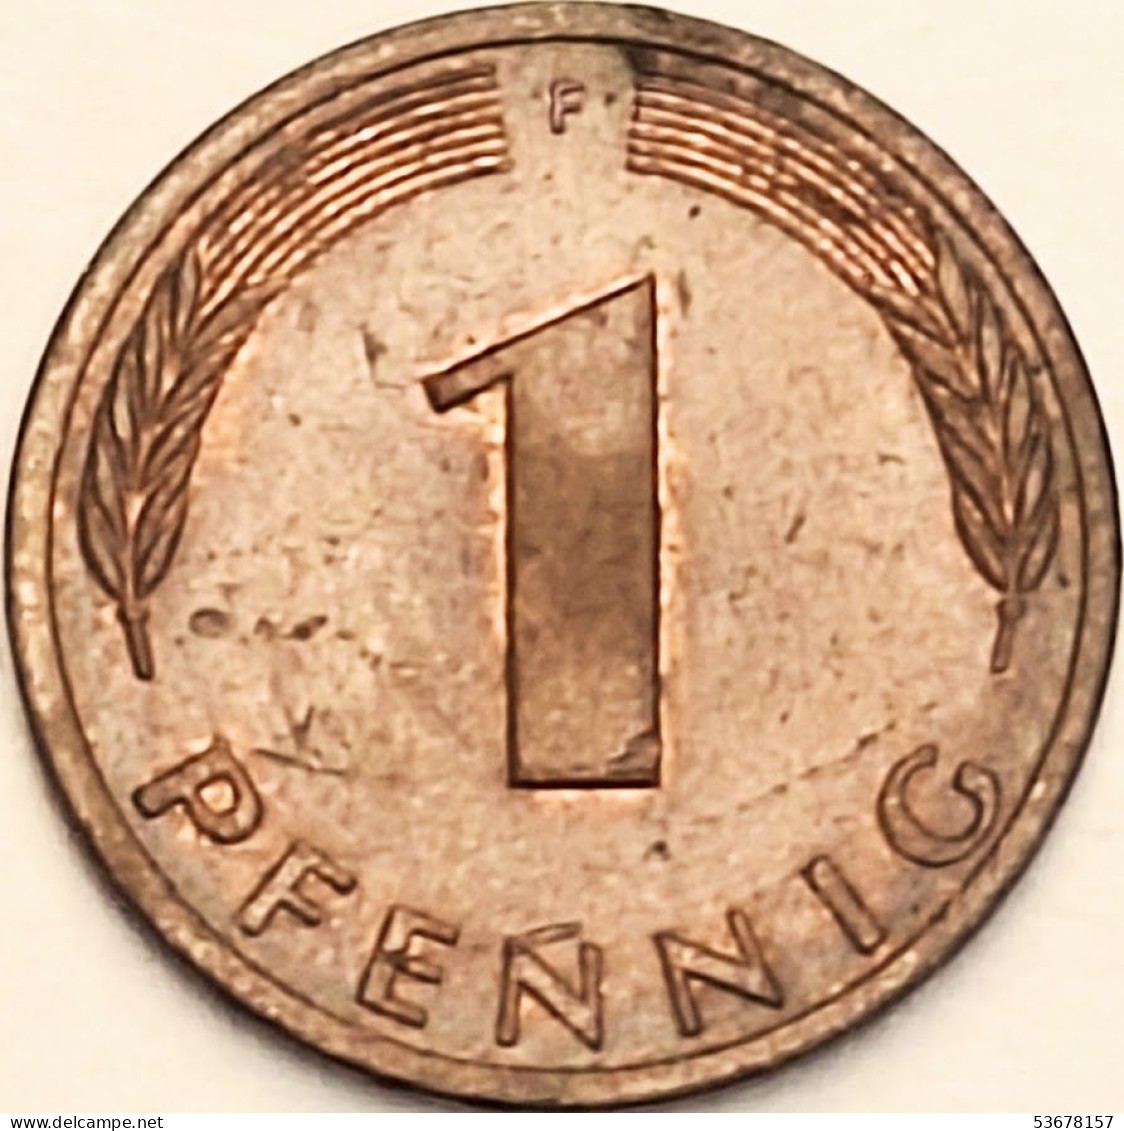 Germany Federal Republic - Pfennig 1979 F, KM# 105 (#4479) - 1 Pfennig